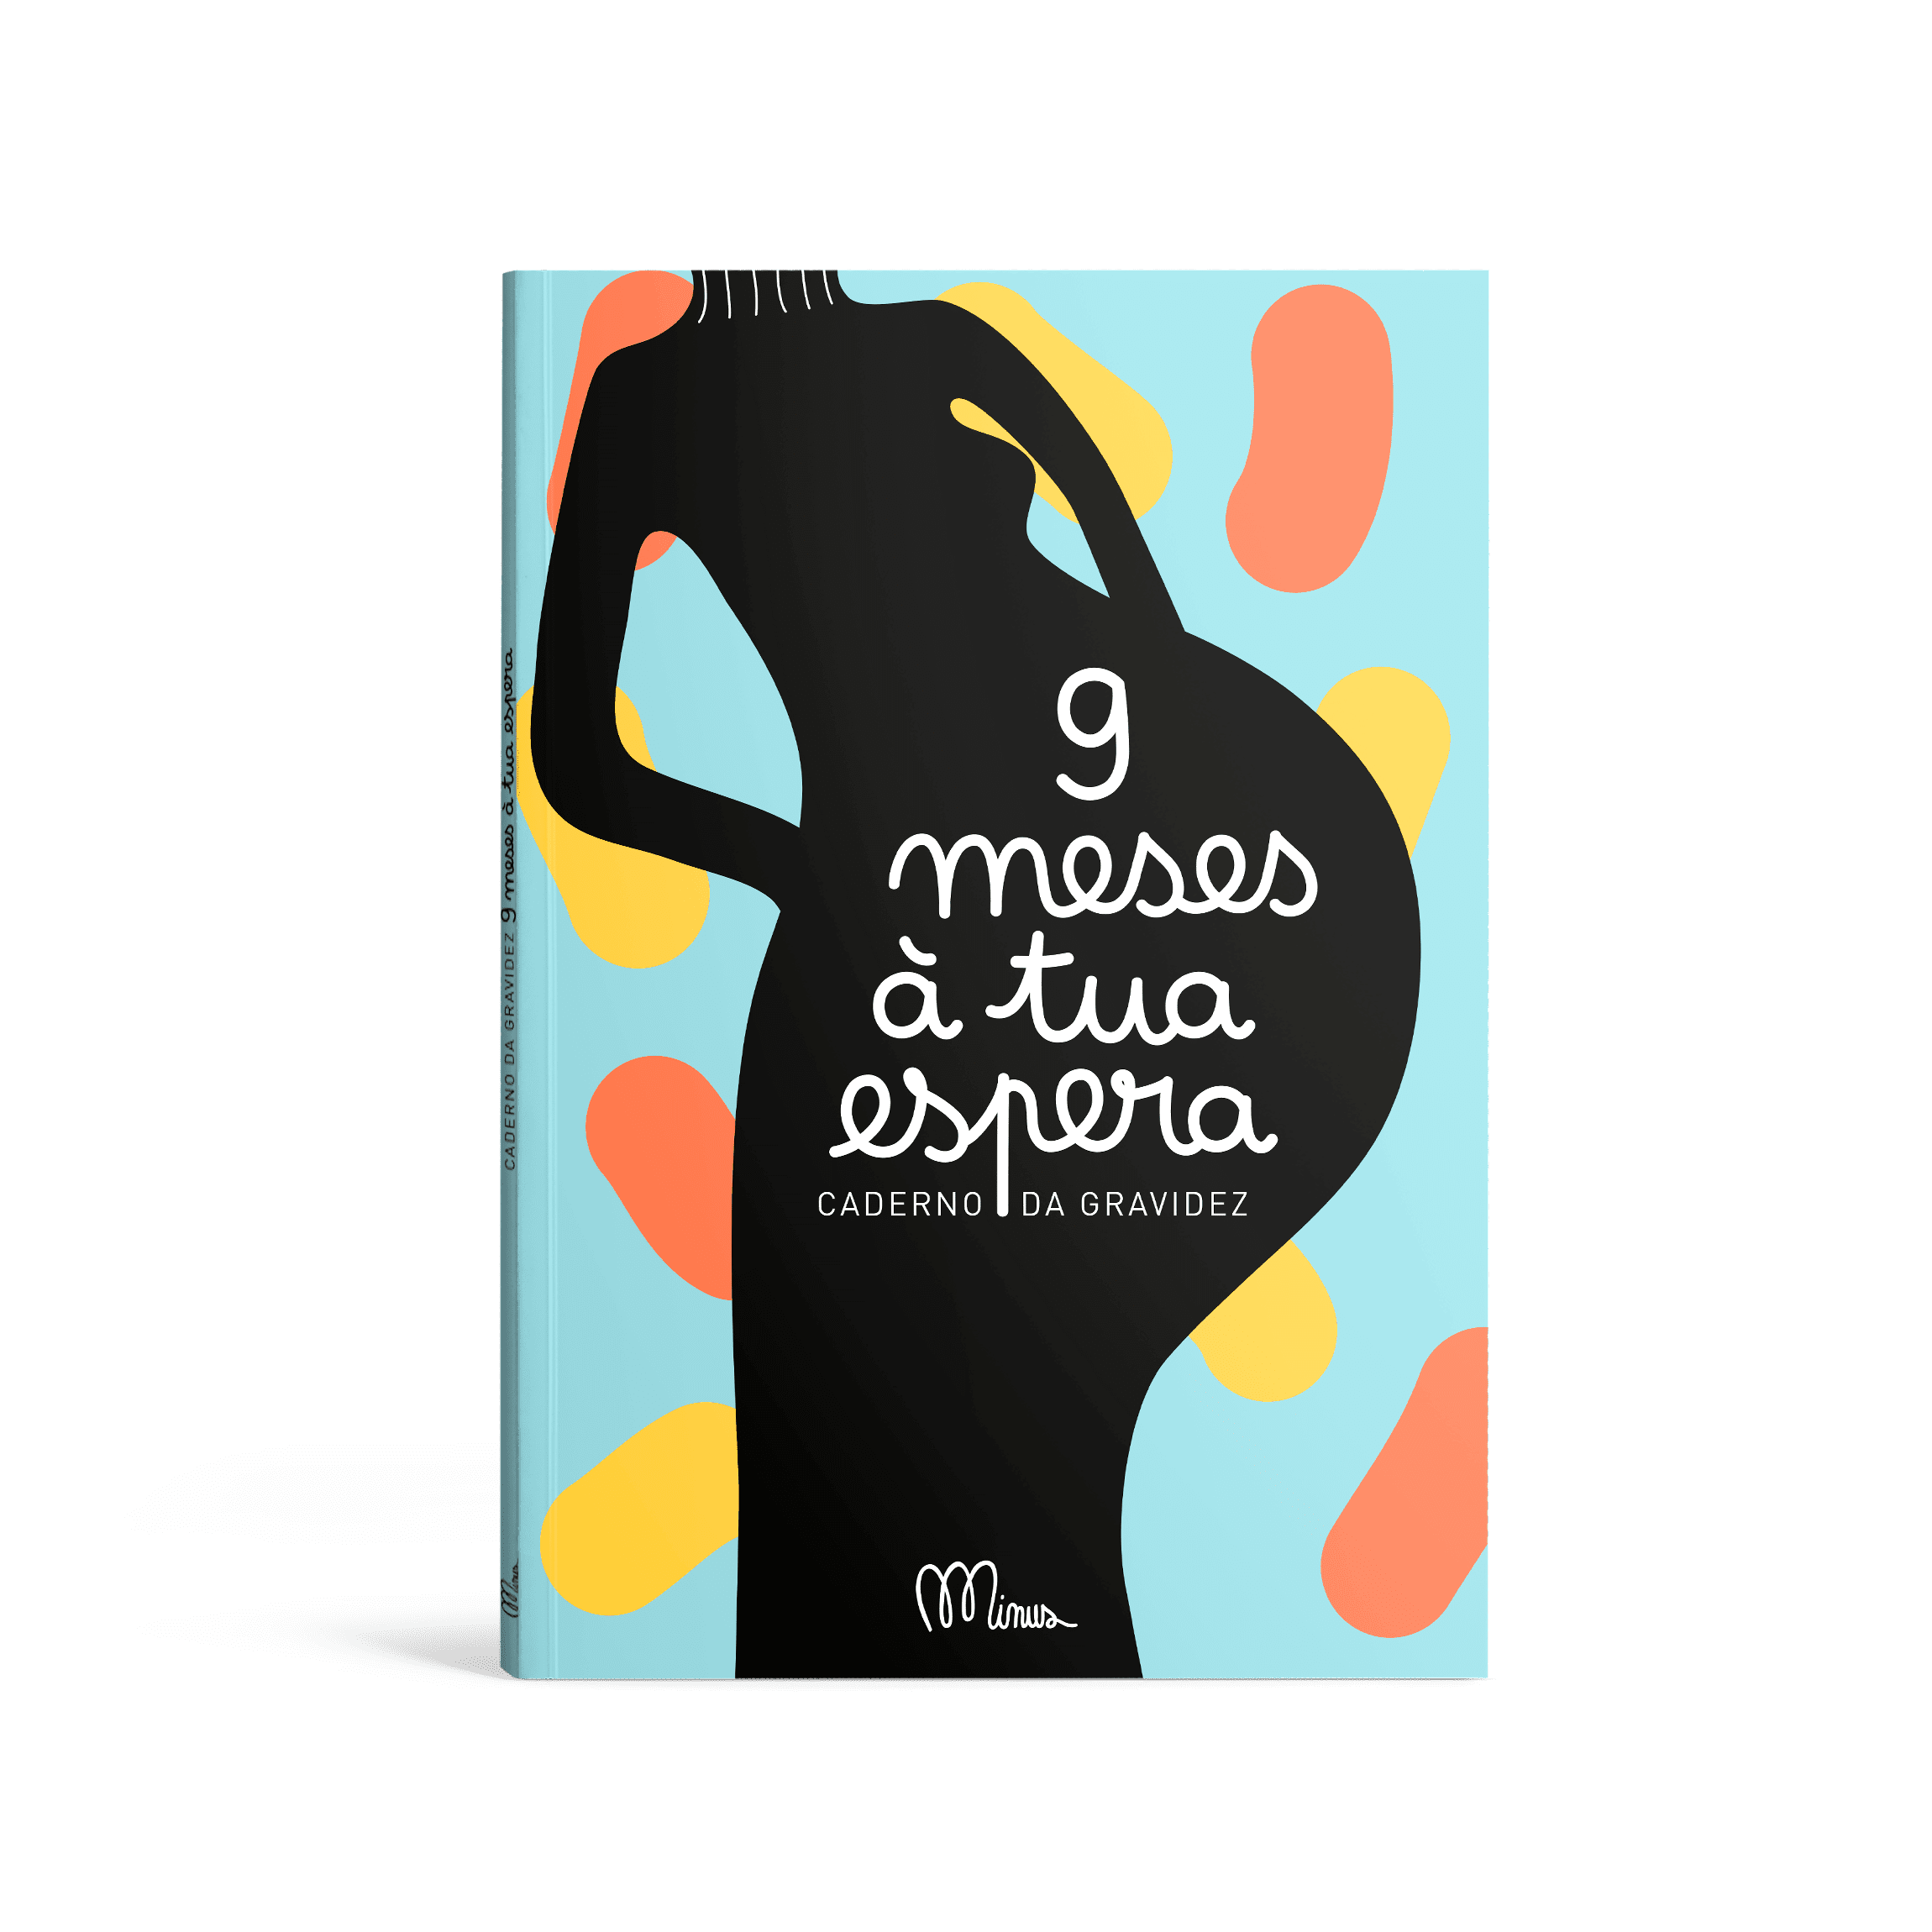 Livro ”9 meses à tua espera" Mini-Me